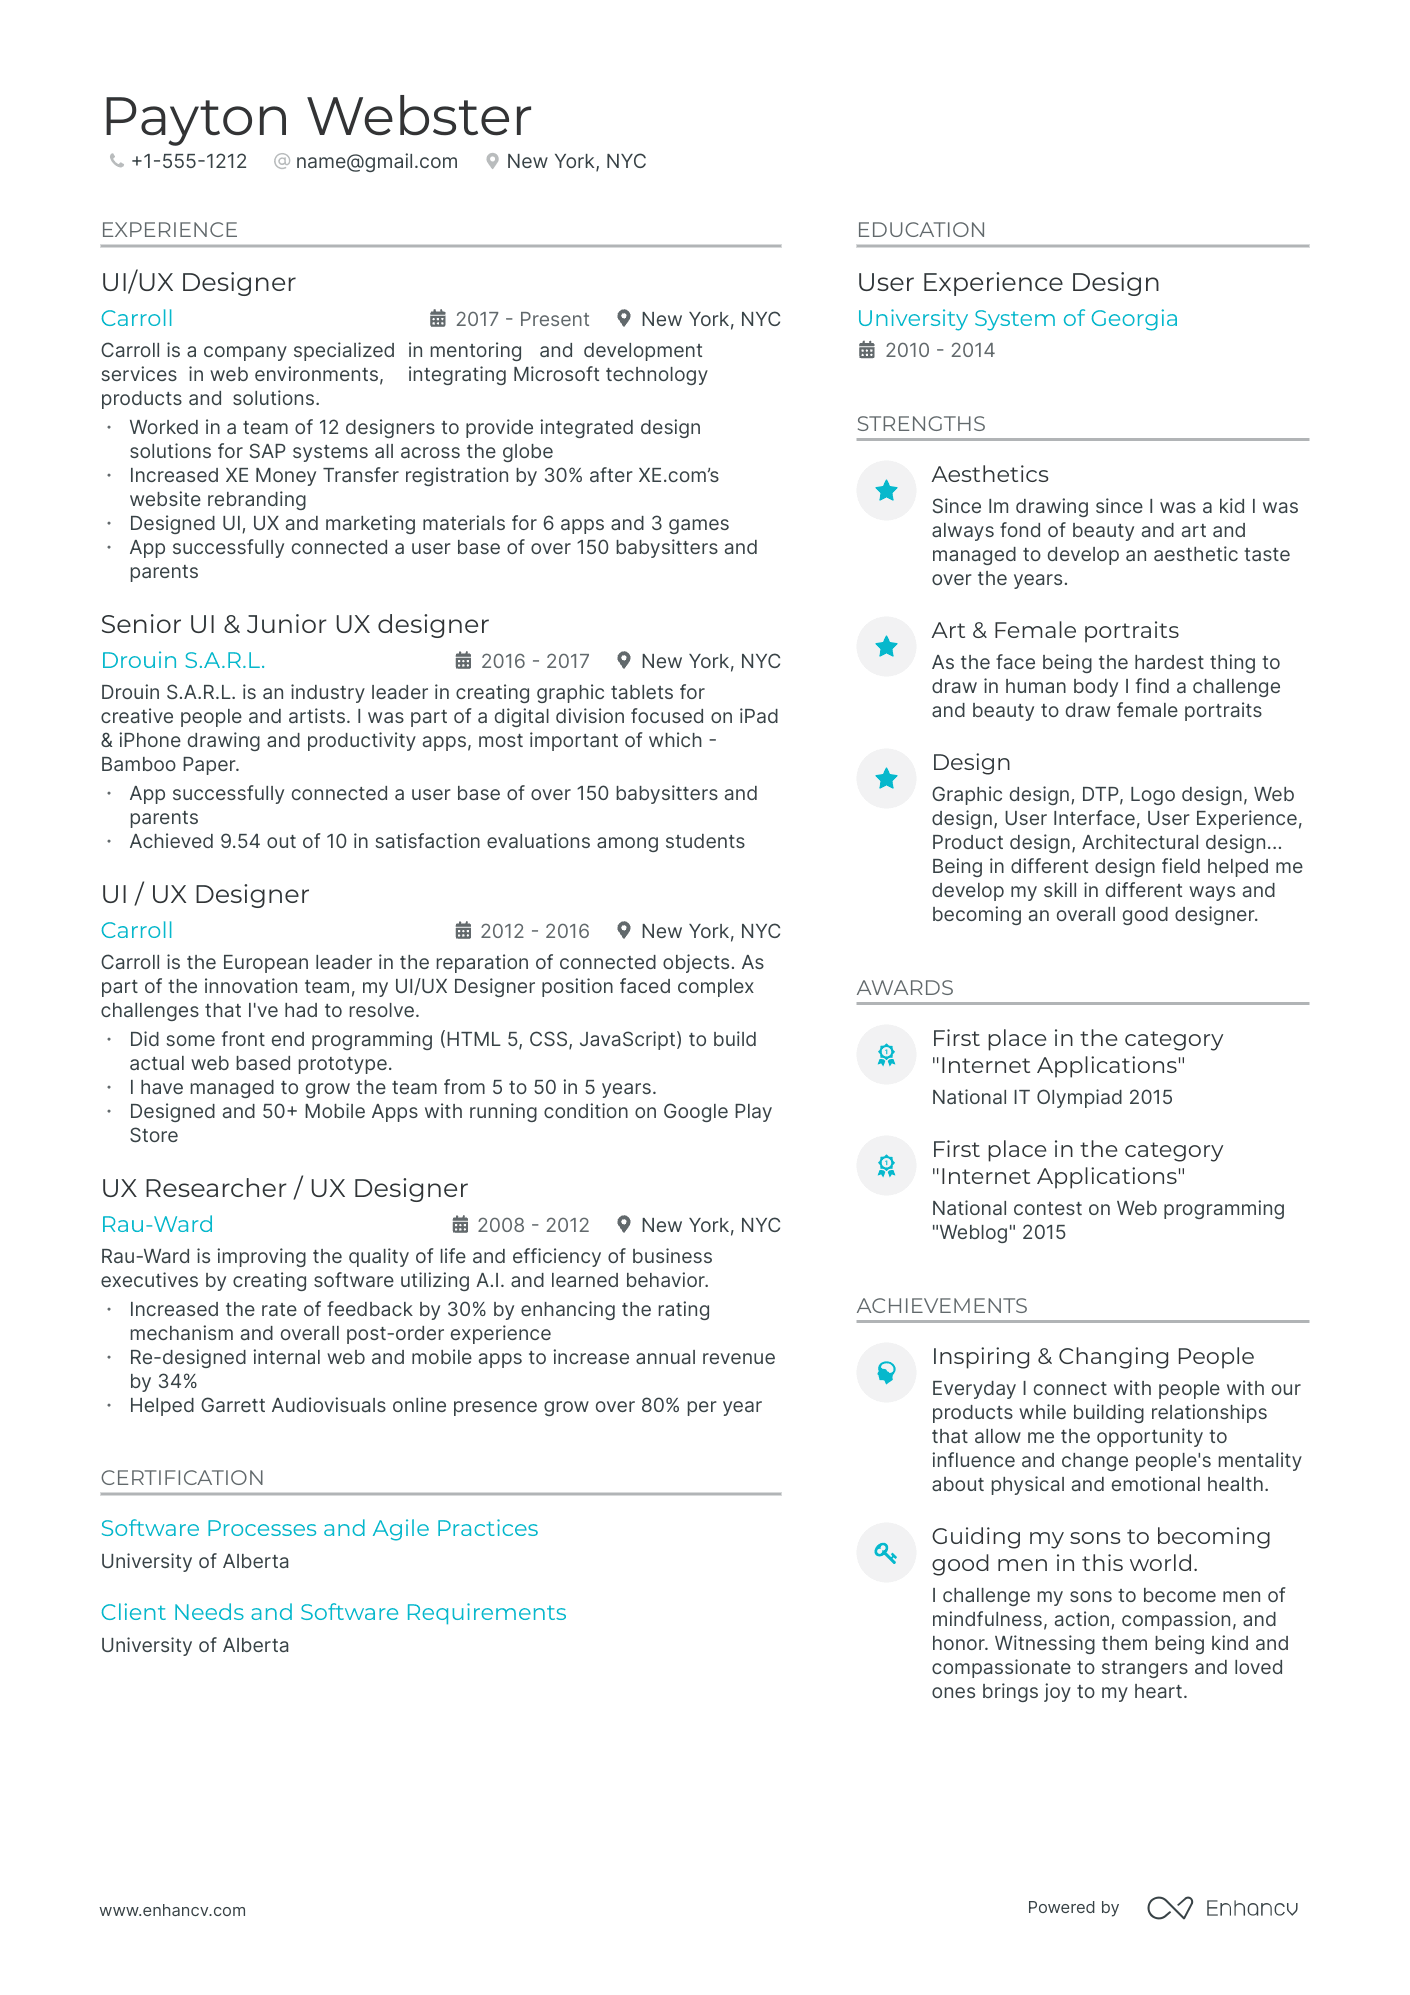 UI Designer resume example